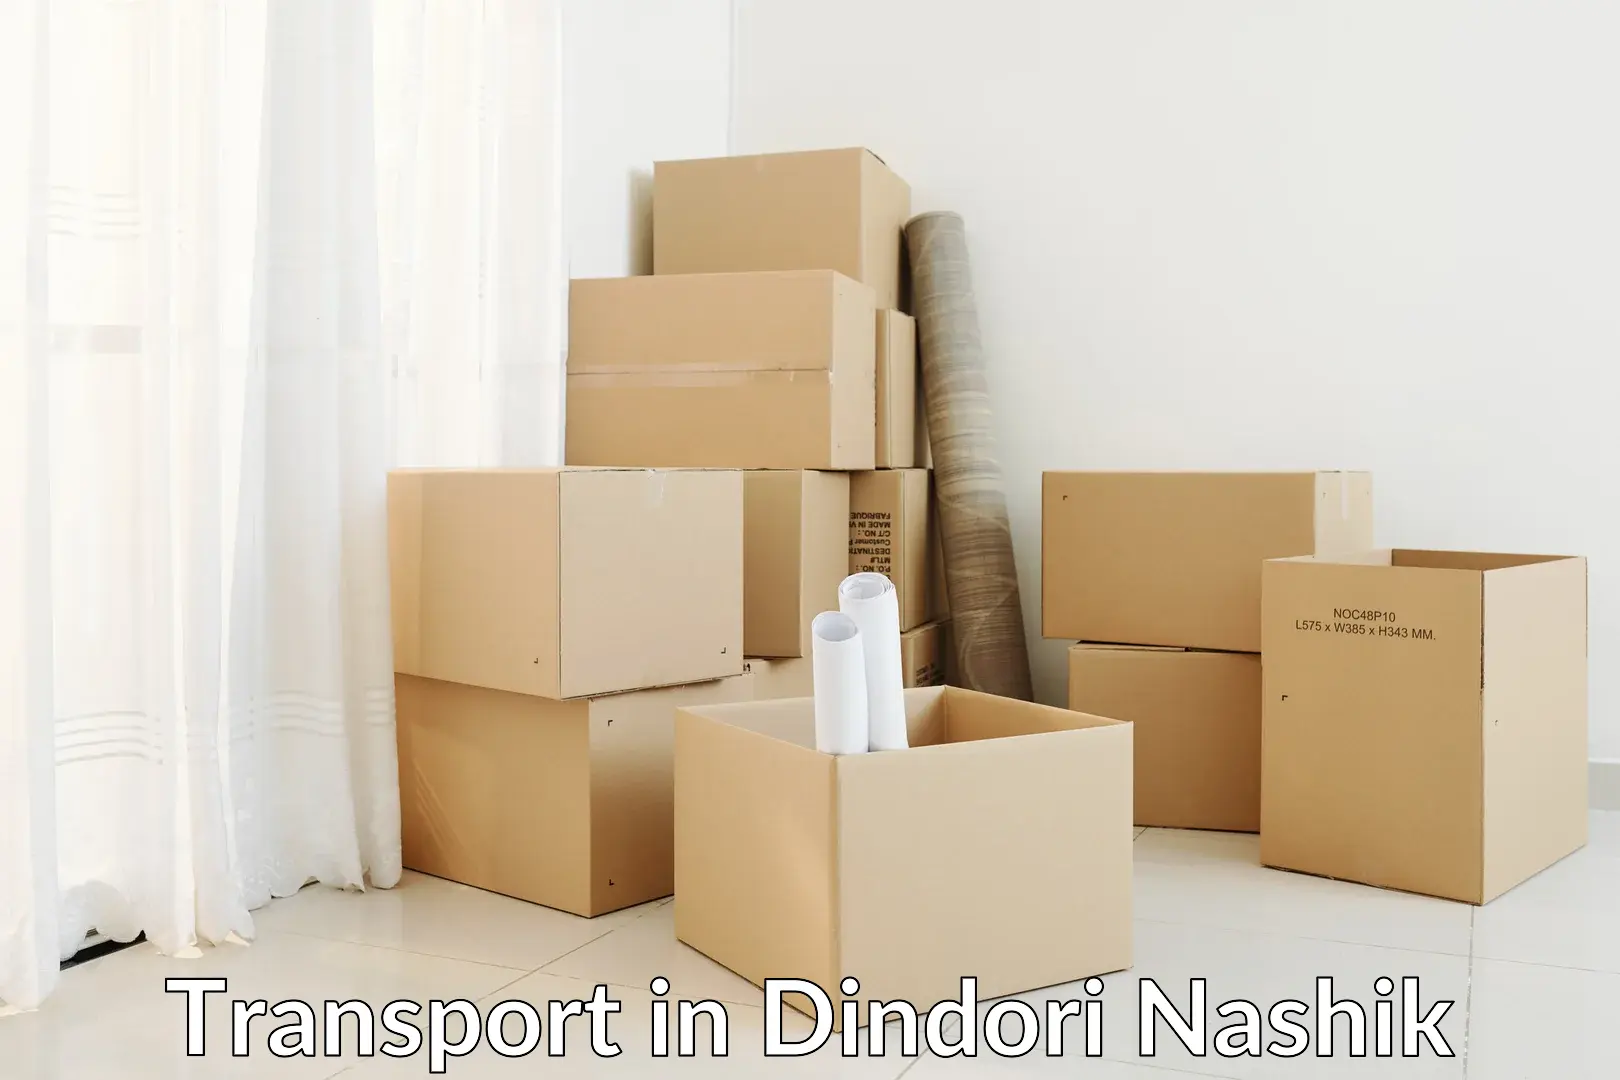 Intercity transport in Dindori Nashik